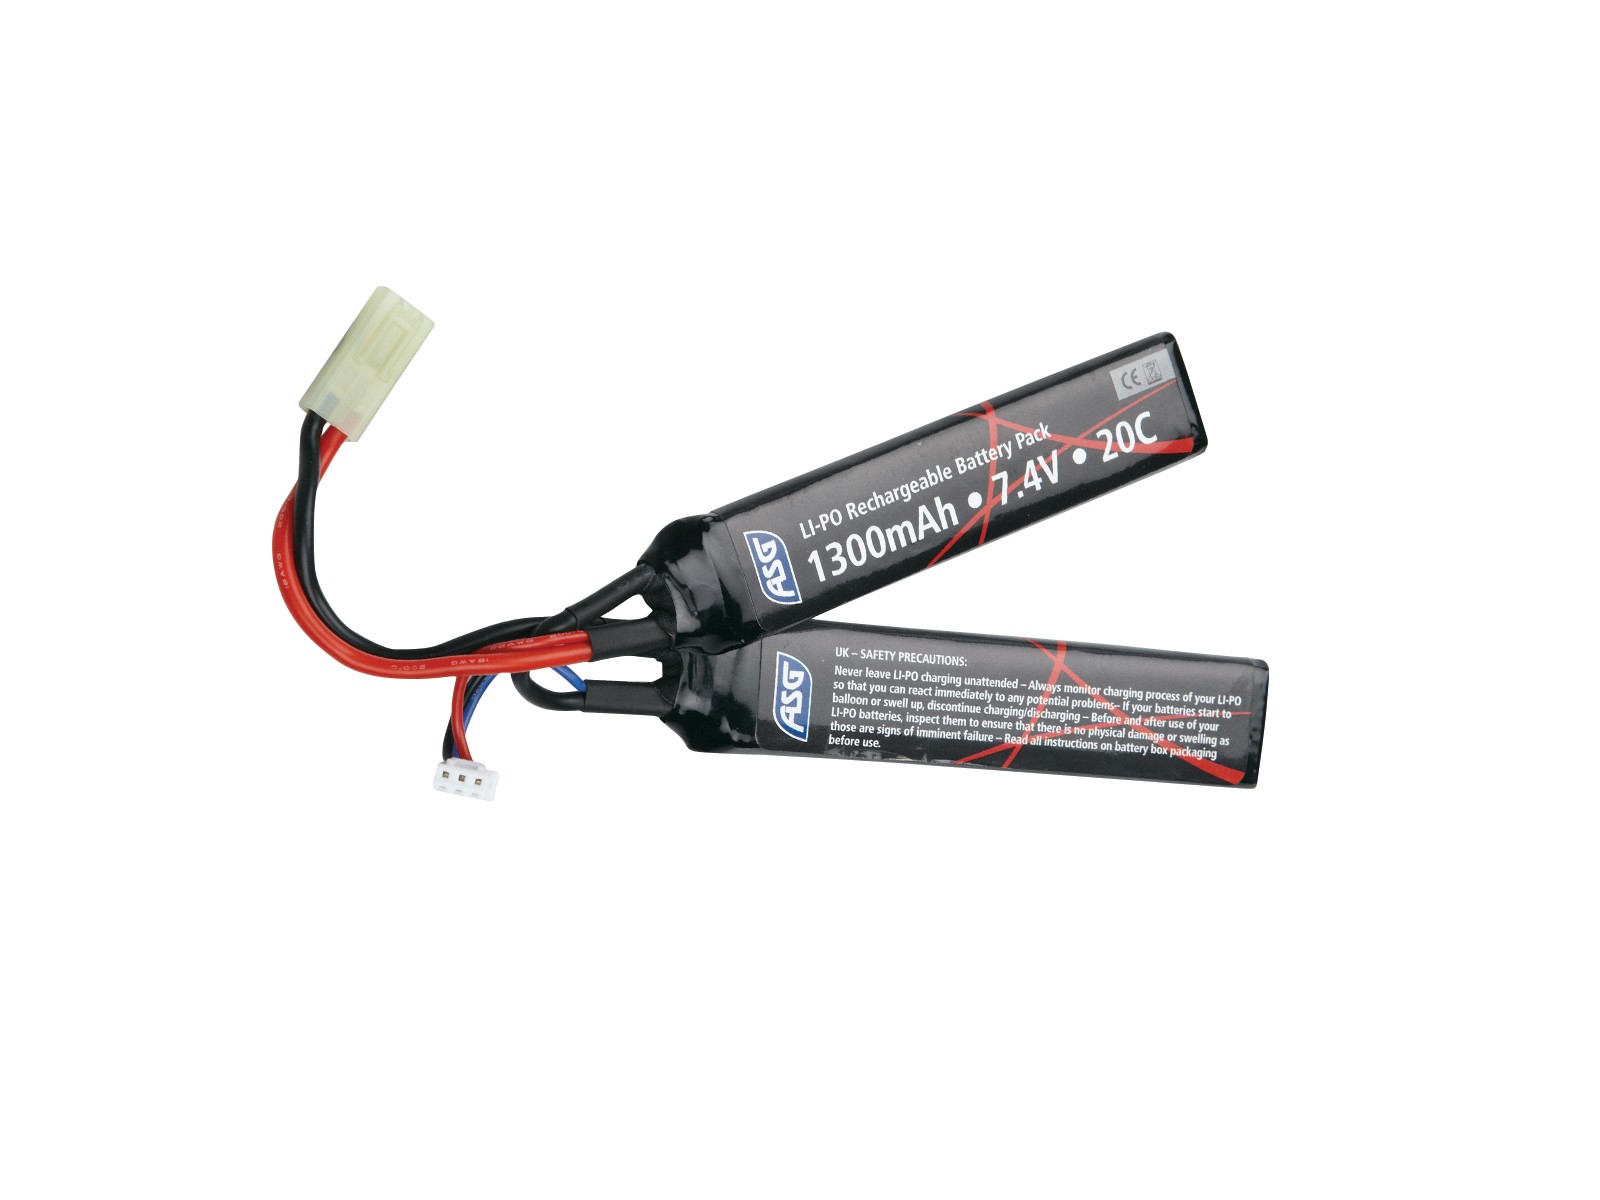 ASG - Batterie Li-Po 7.4V 1300mAh - Double stick - Elite Airsoft